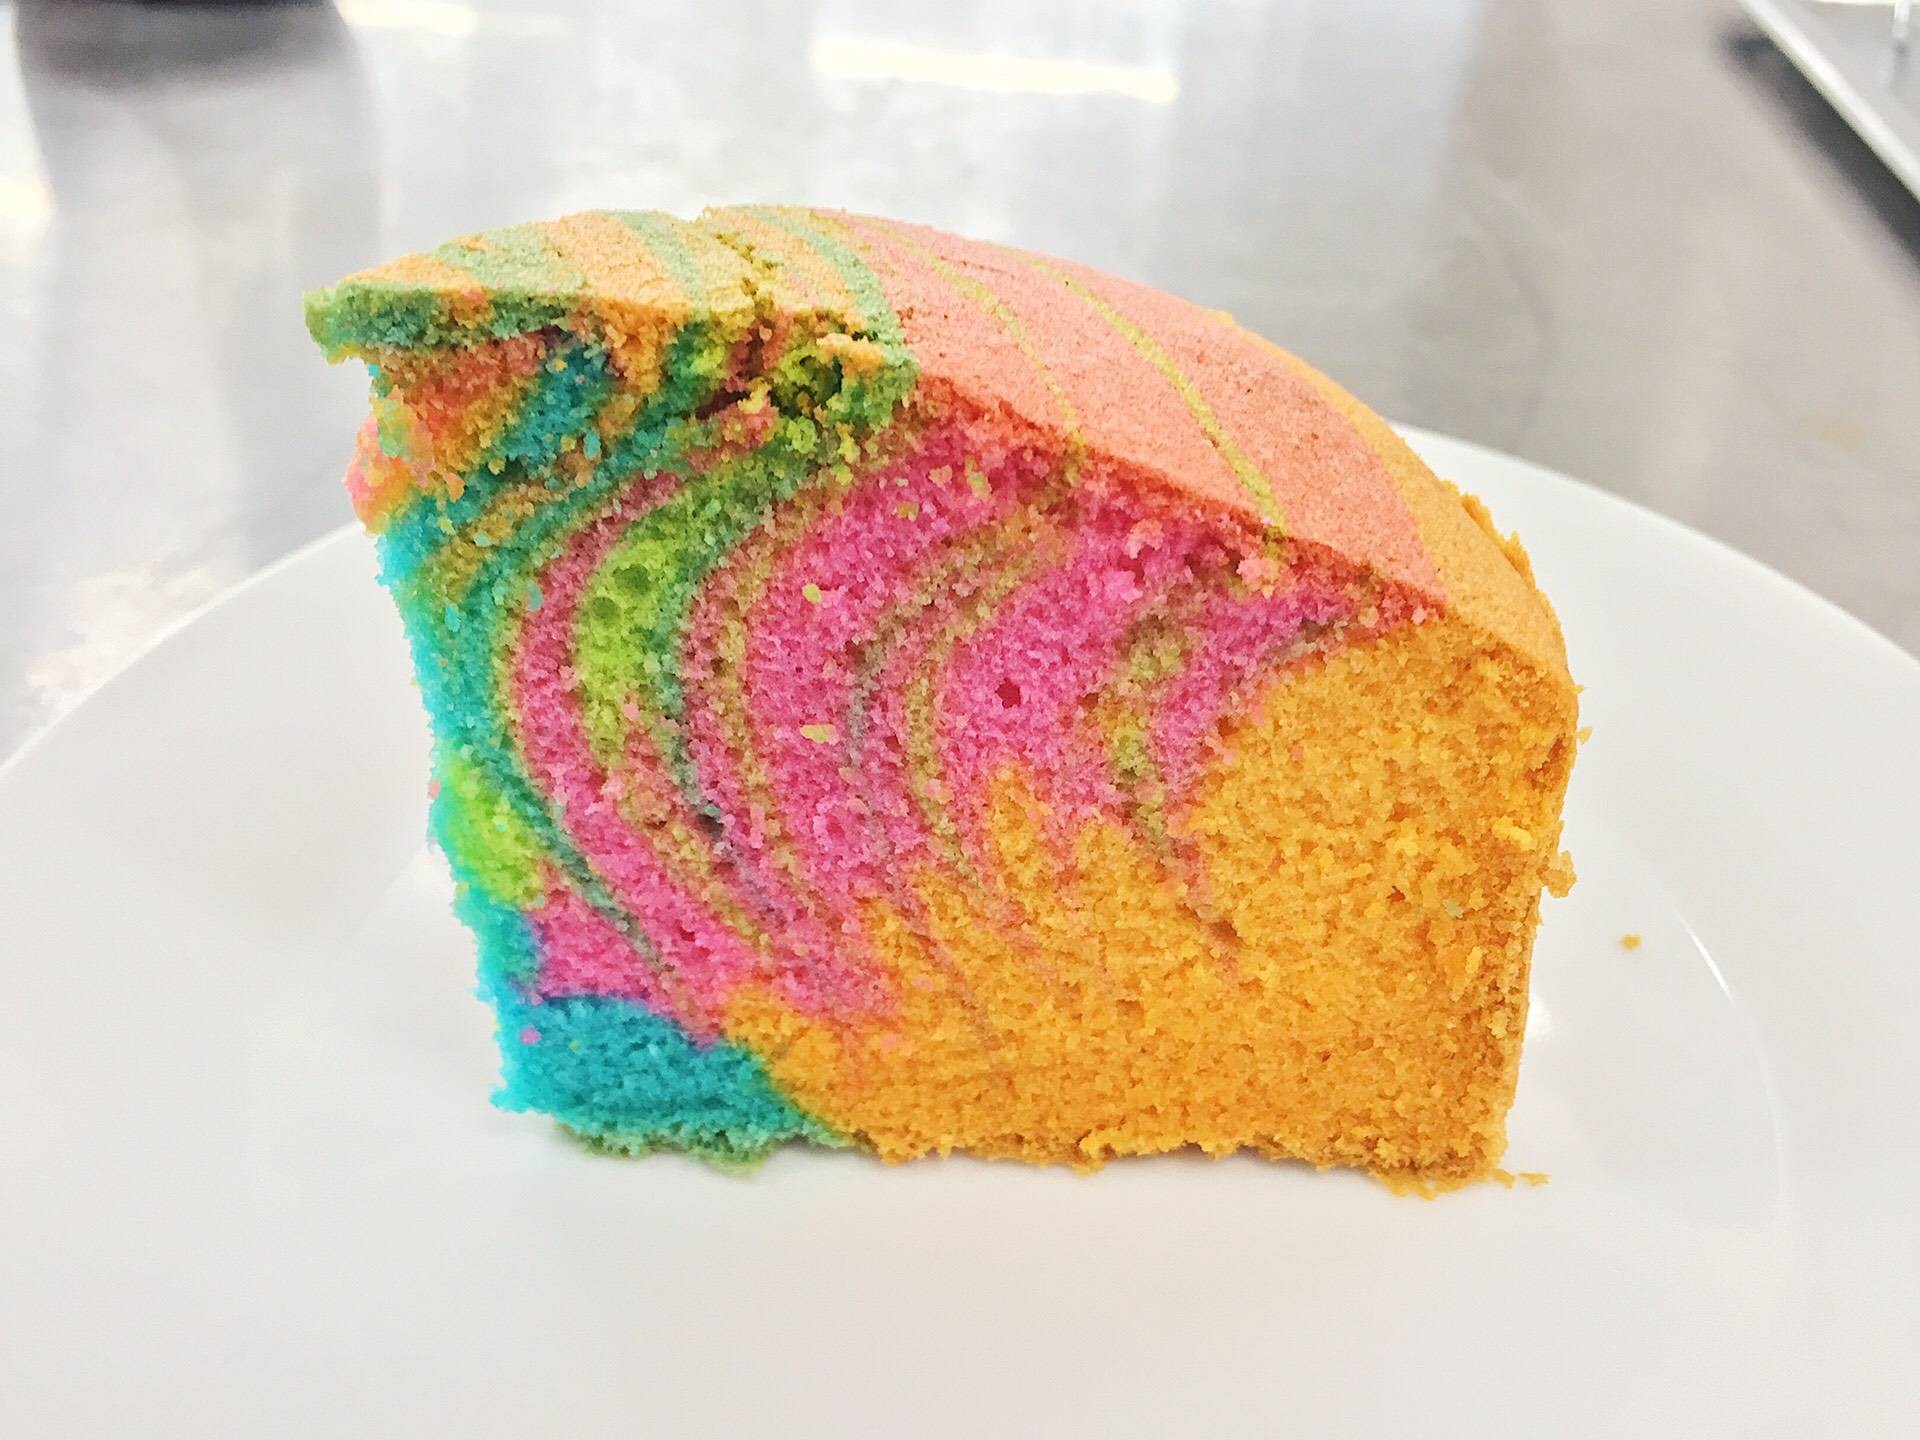 สูตร เค้กสายรุ้ง [Rainbow Cake] พร้อมวิธีทำโดย Pungklom - Wongnai Cooking